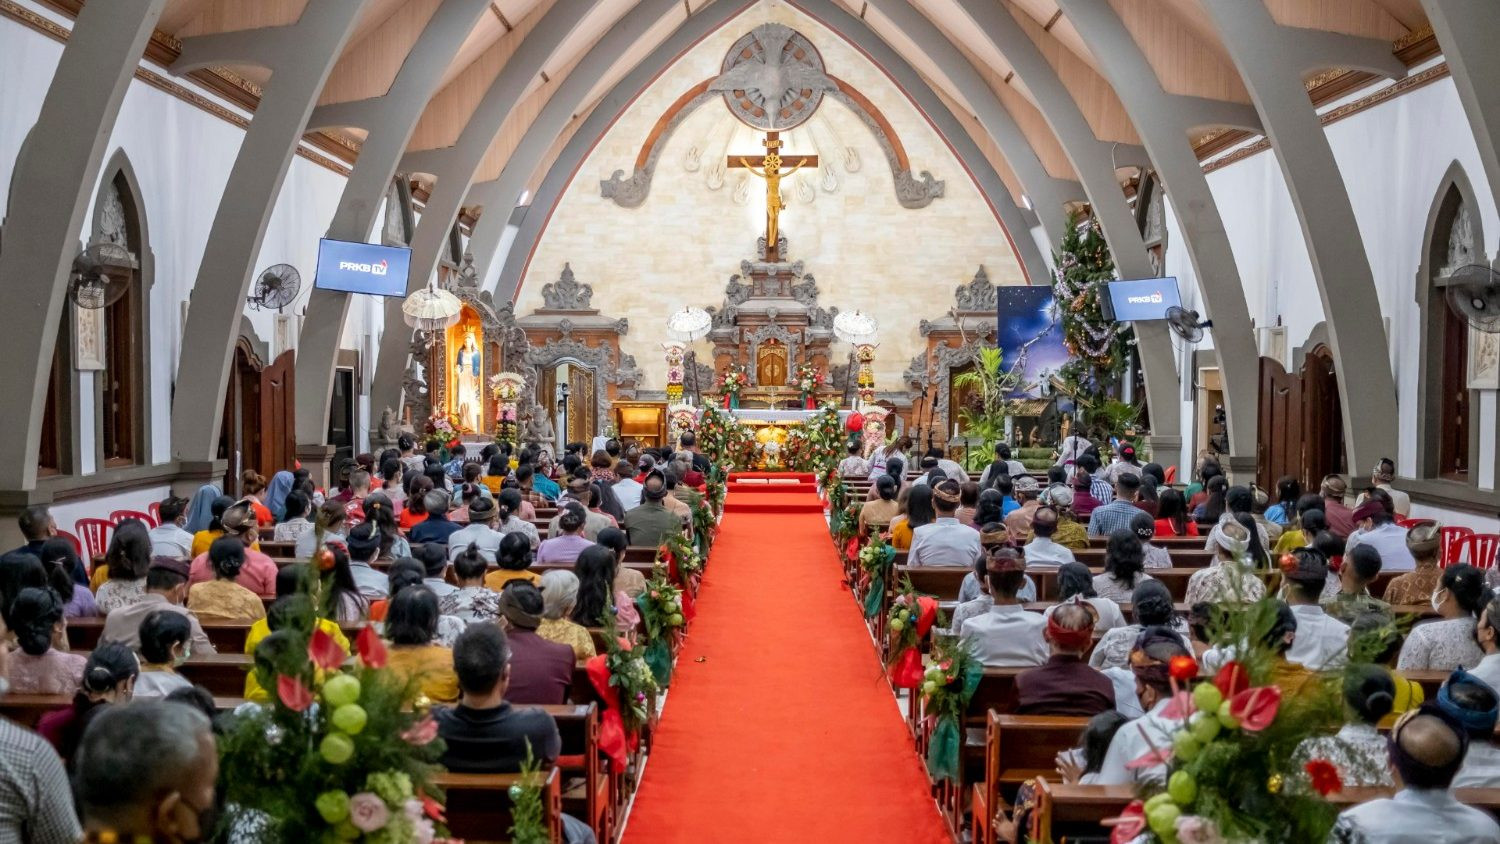 Thánh lễ đêm Giáng snh tại một nhà thờ ở Indonesia.